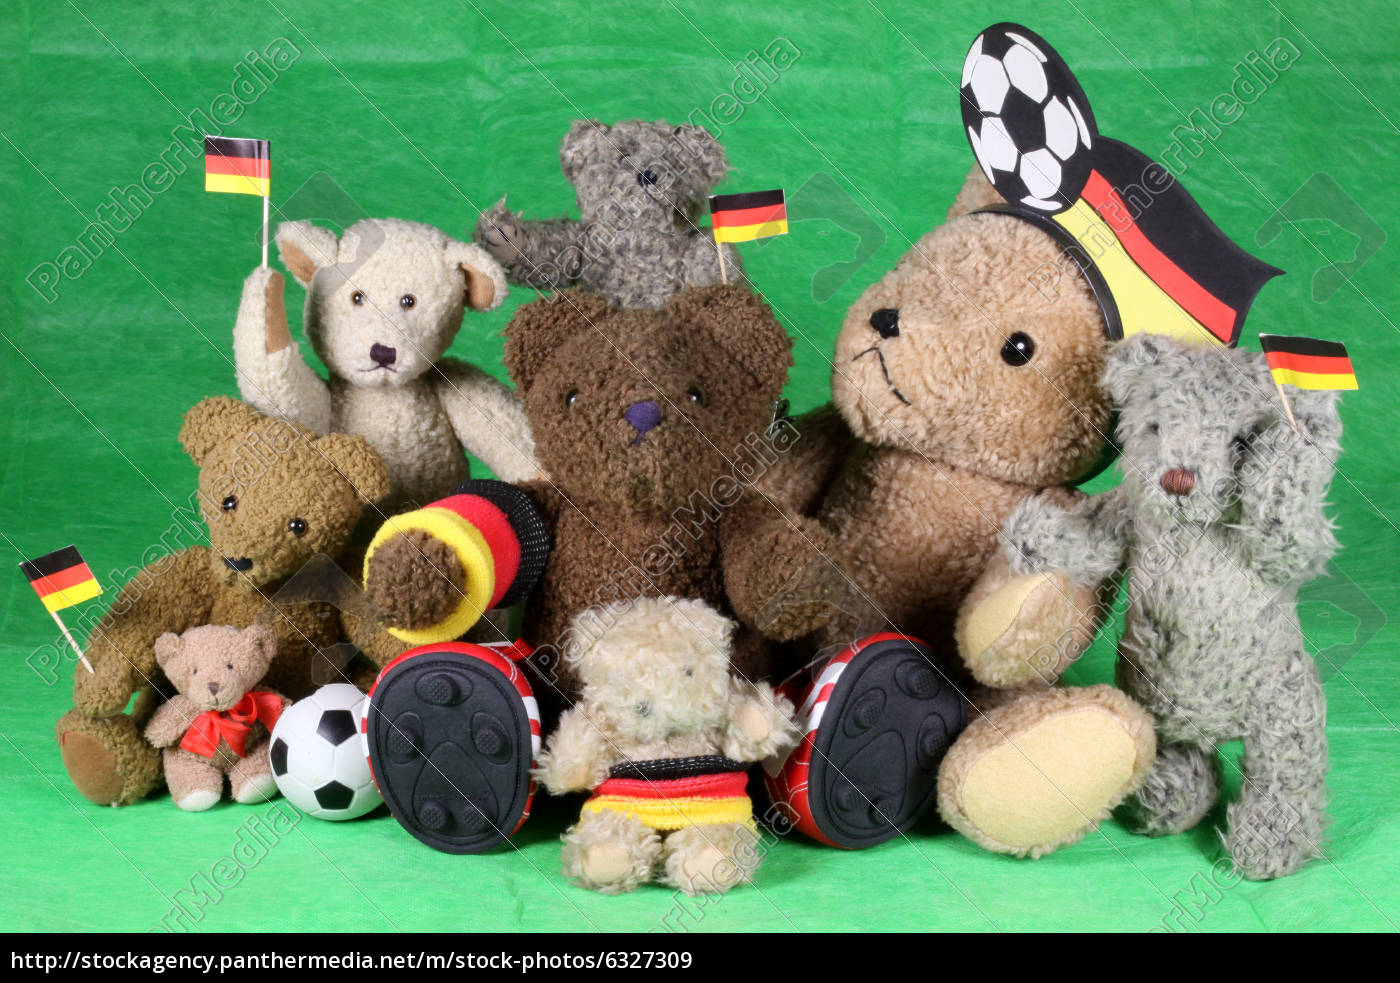 football teddy bears